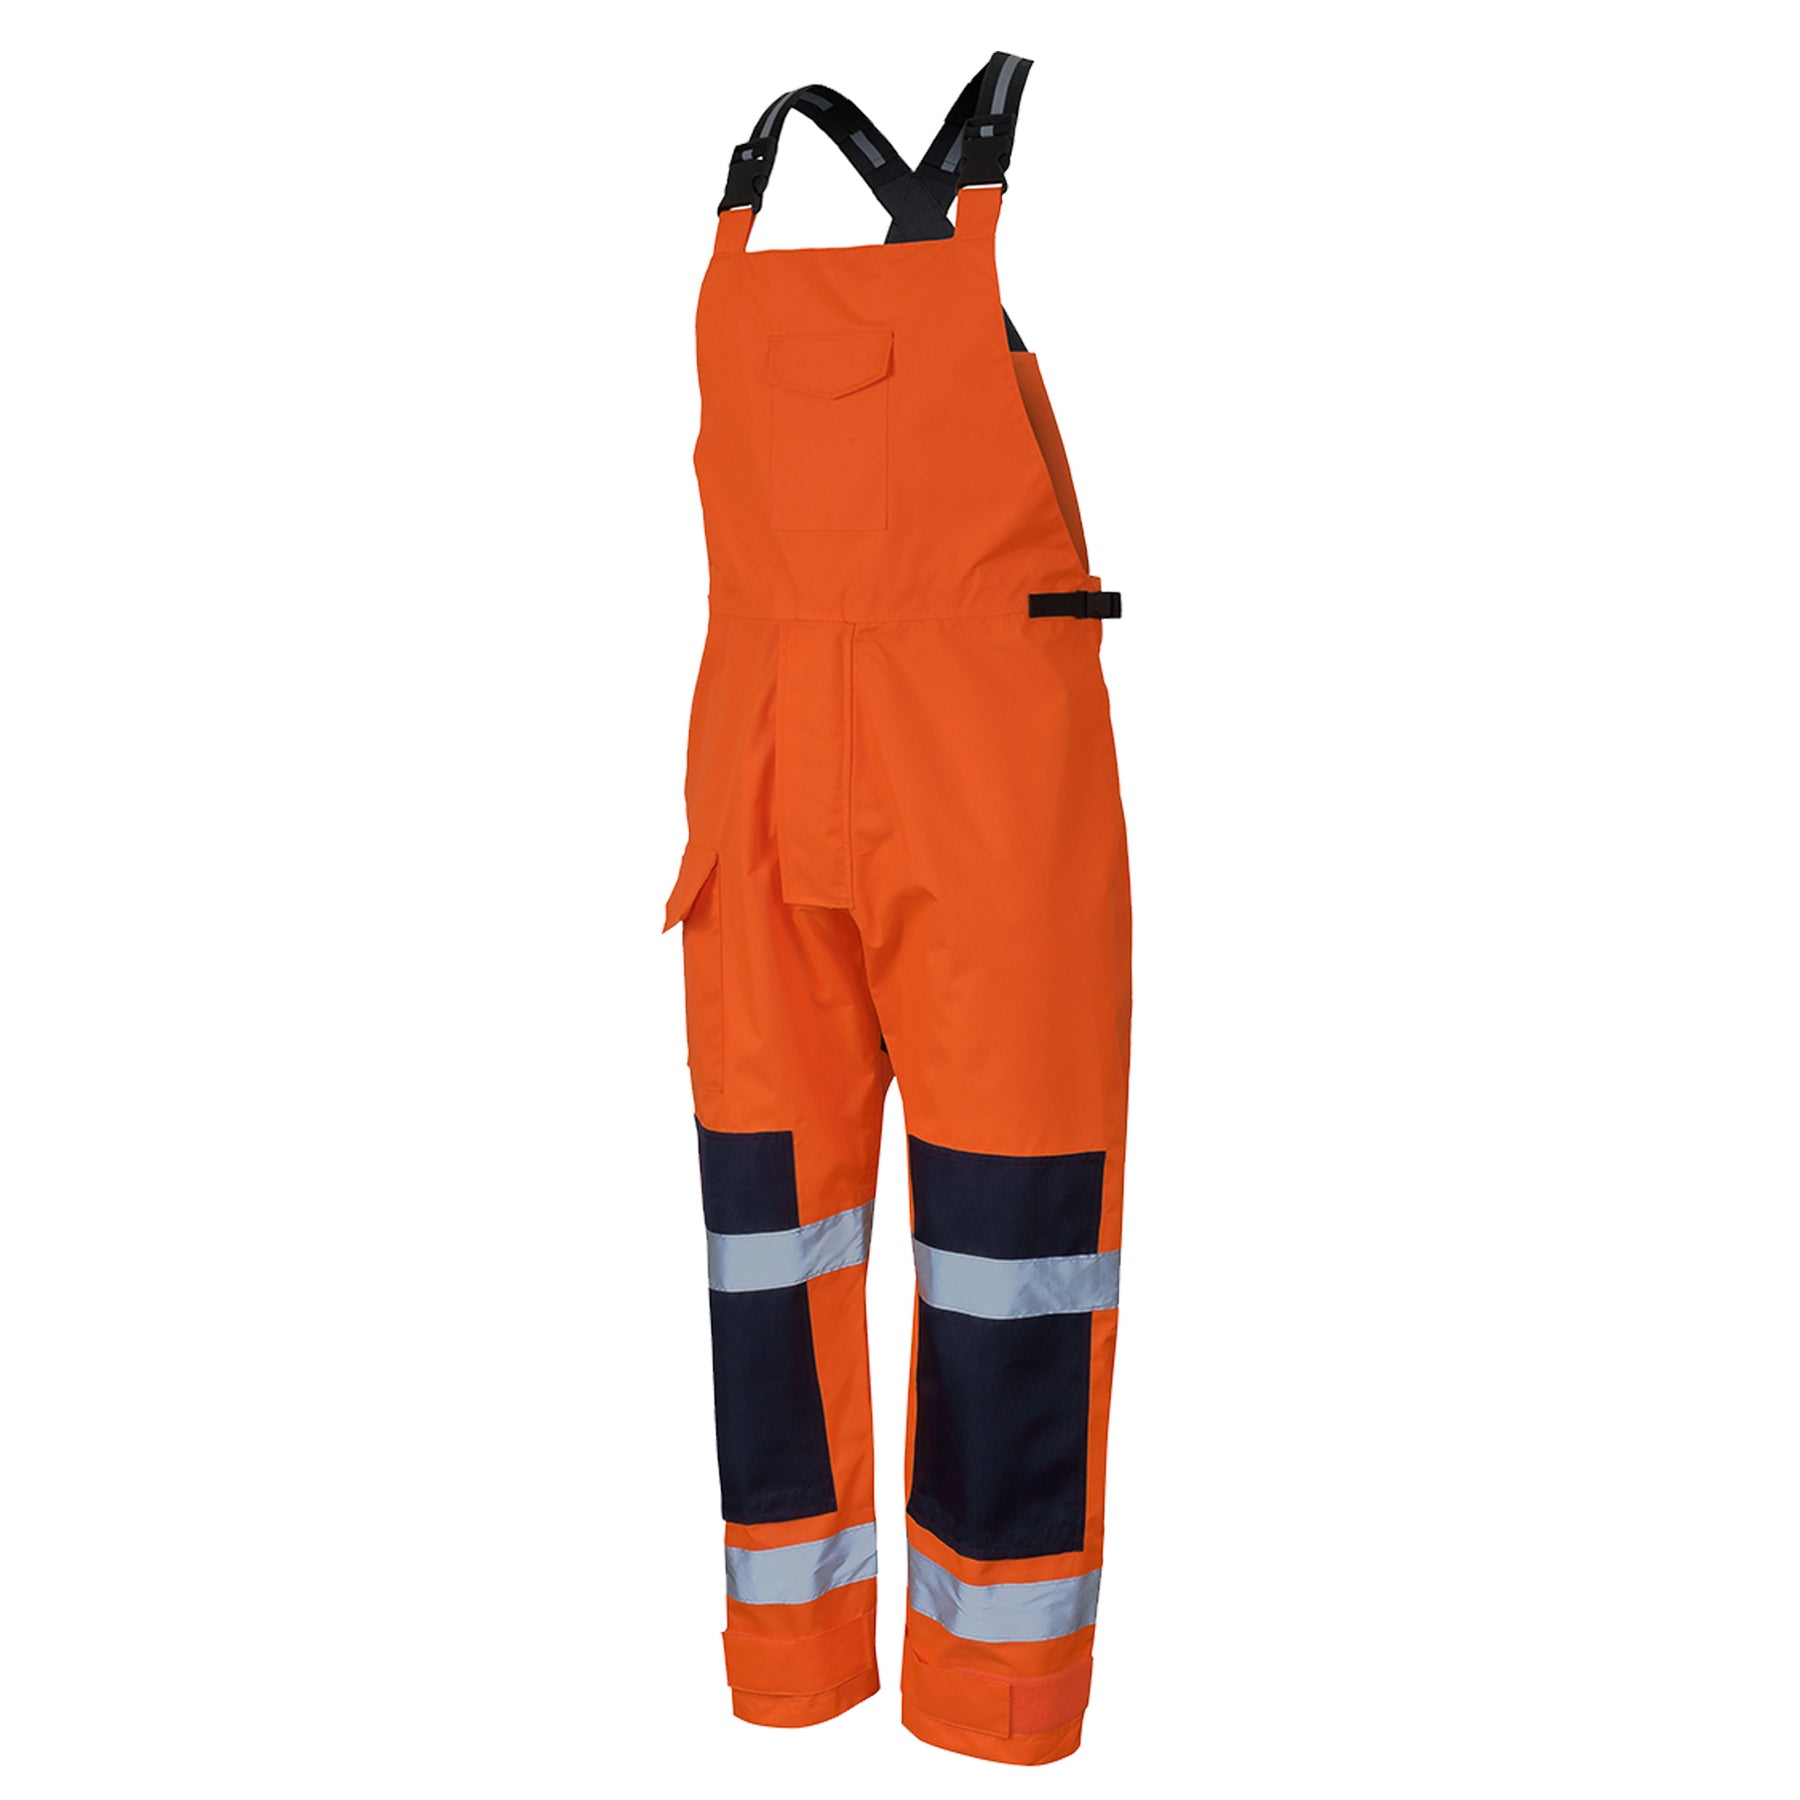 jbs wear waterproof bib and brace overall in orange